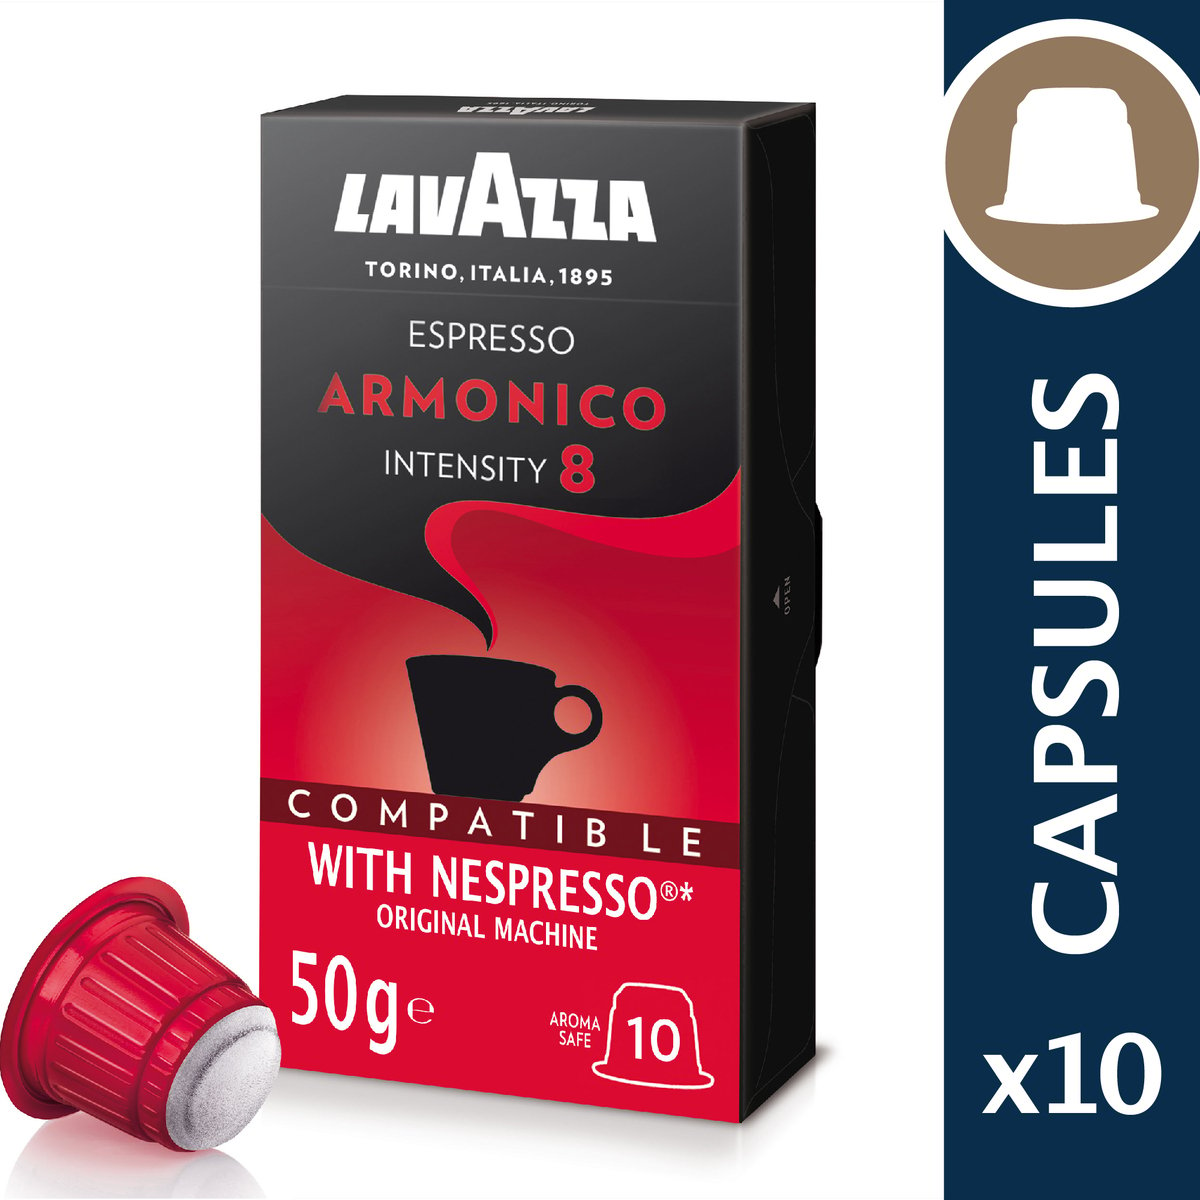 Lavazza Armonico Intensity 8 Espresso 50 g